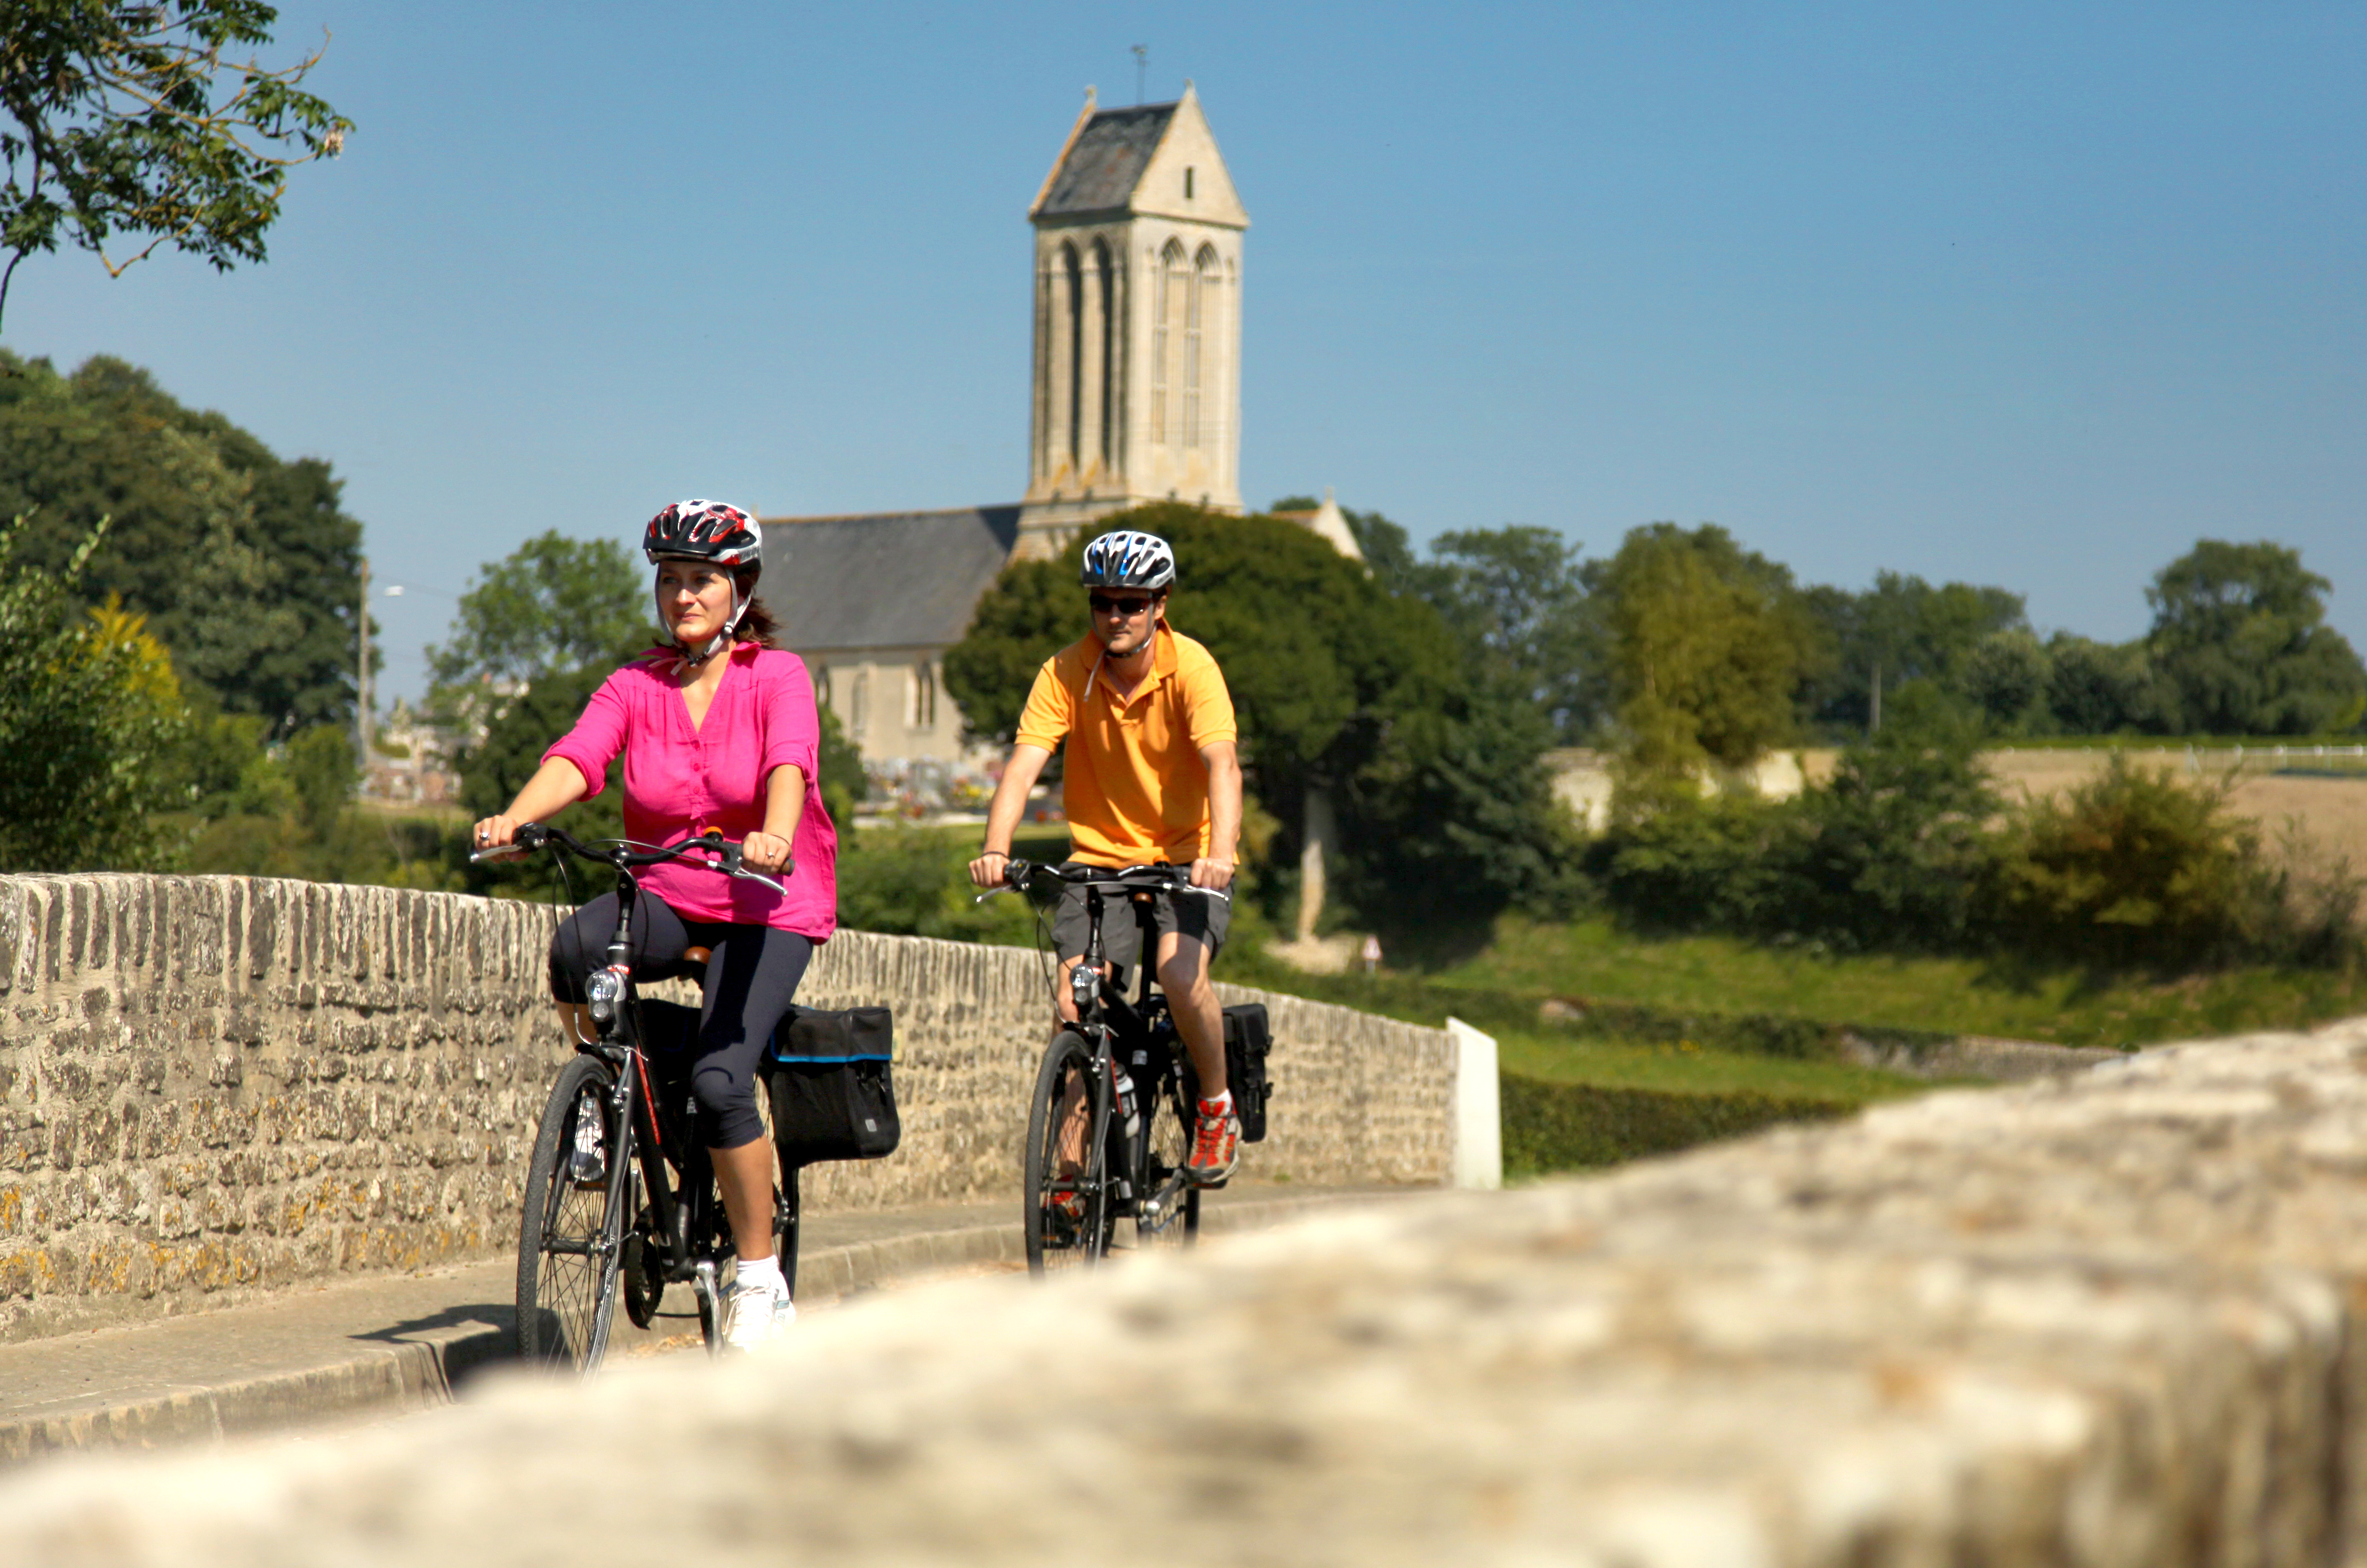 Heerlijk rustig door Bretagne en Normandië fietsen is erg ontspannend